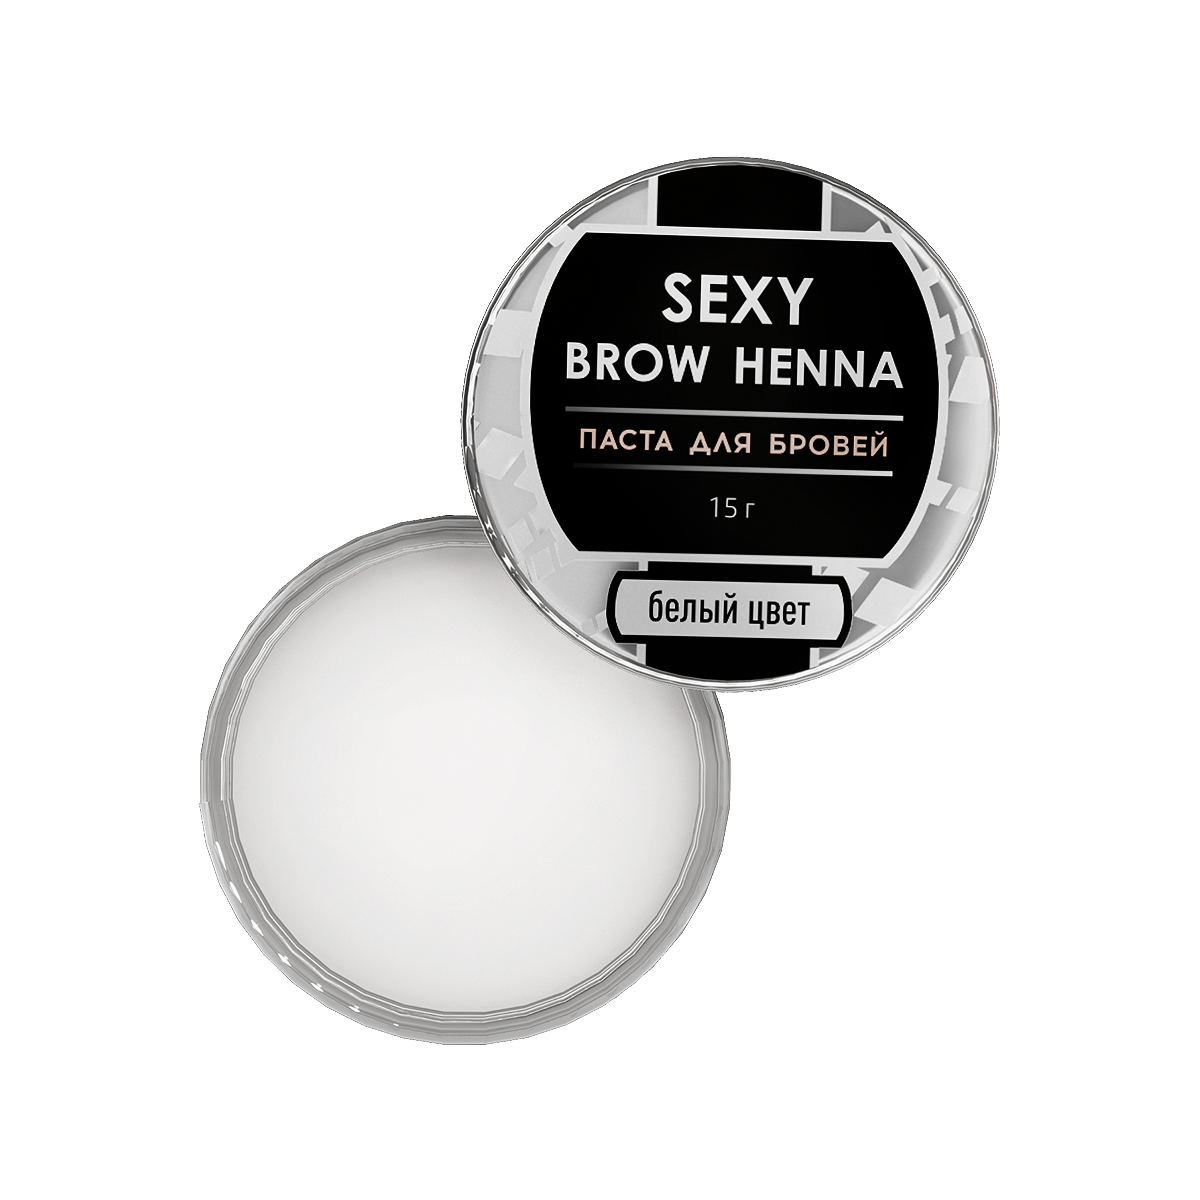 Паста для бровей SEXY BROW HENNA (Секси бров), белый цвет, 15г innovator cosmetics набор хны для бровeй sexy brow henna